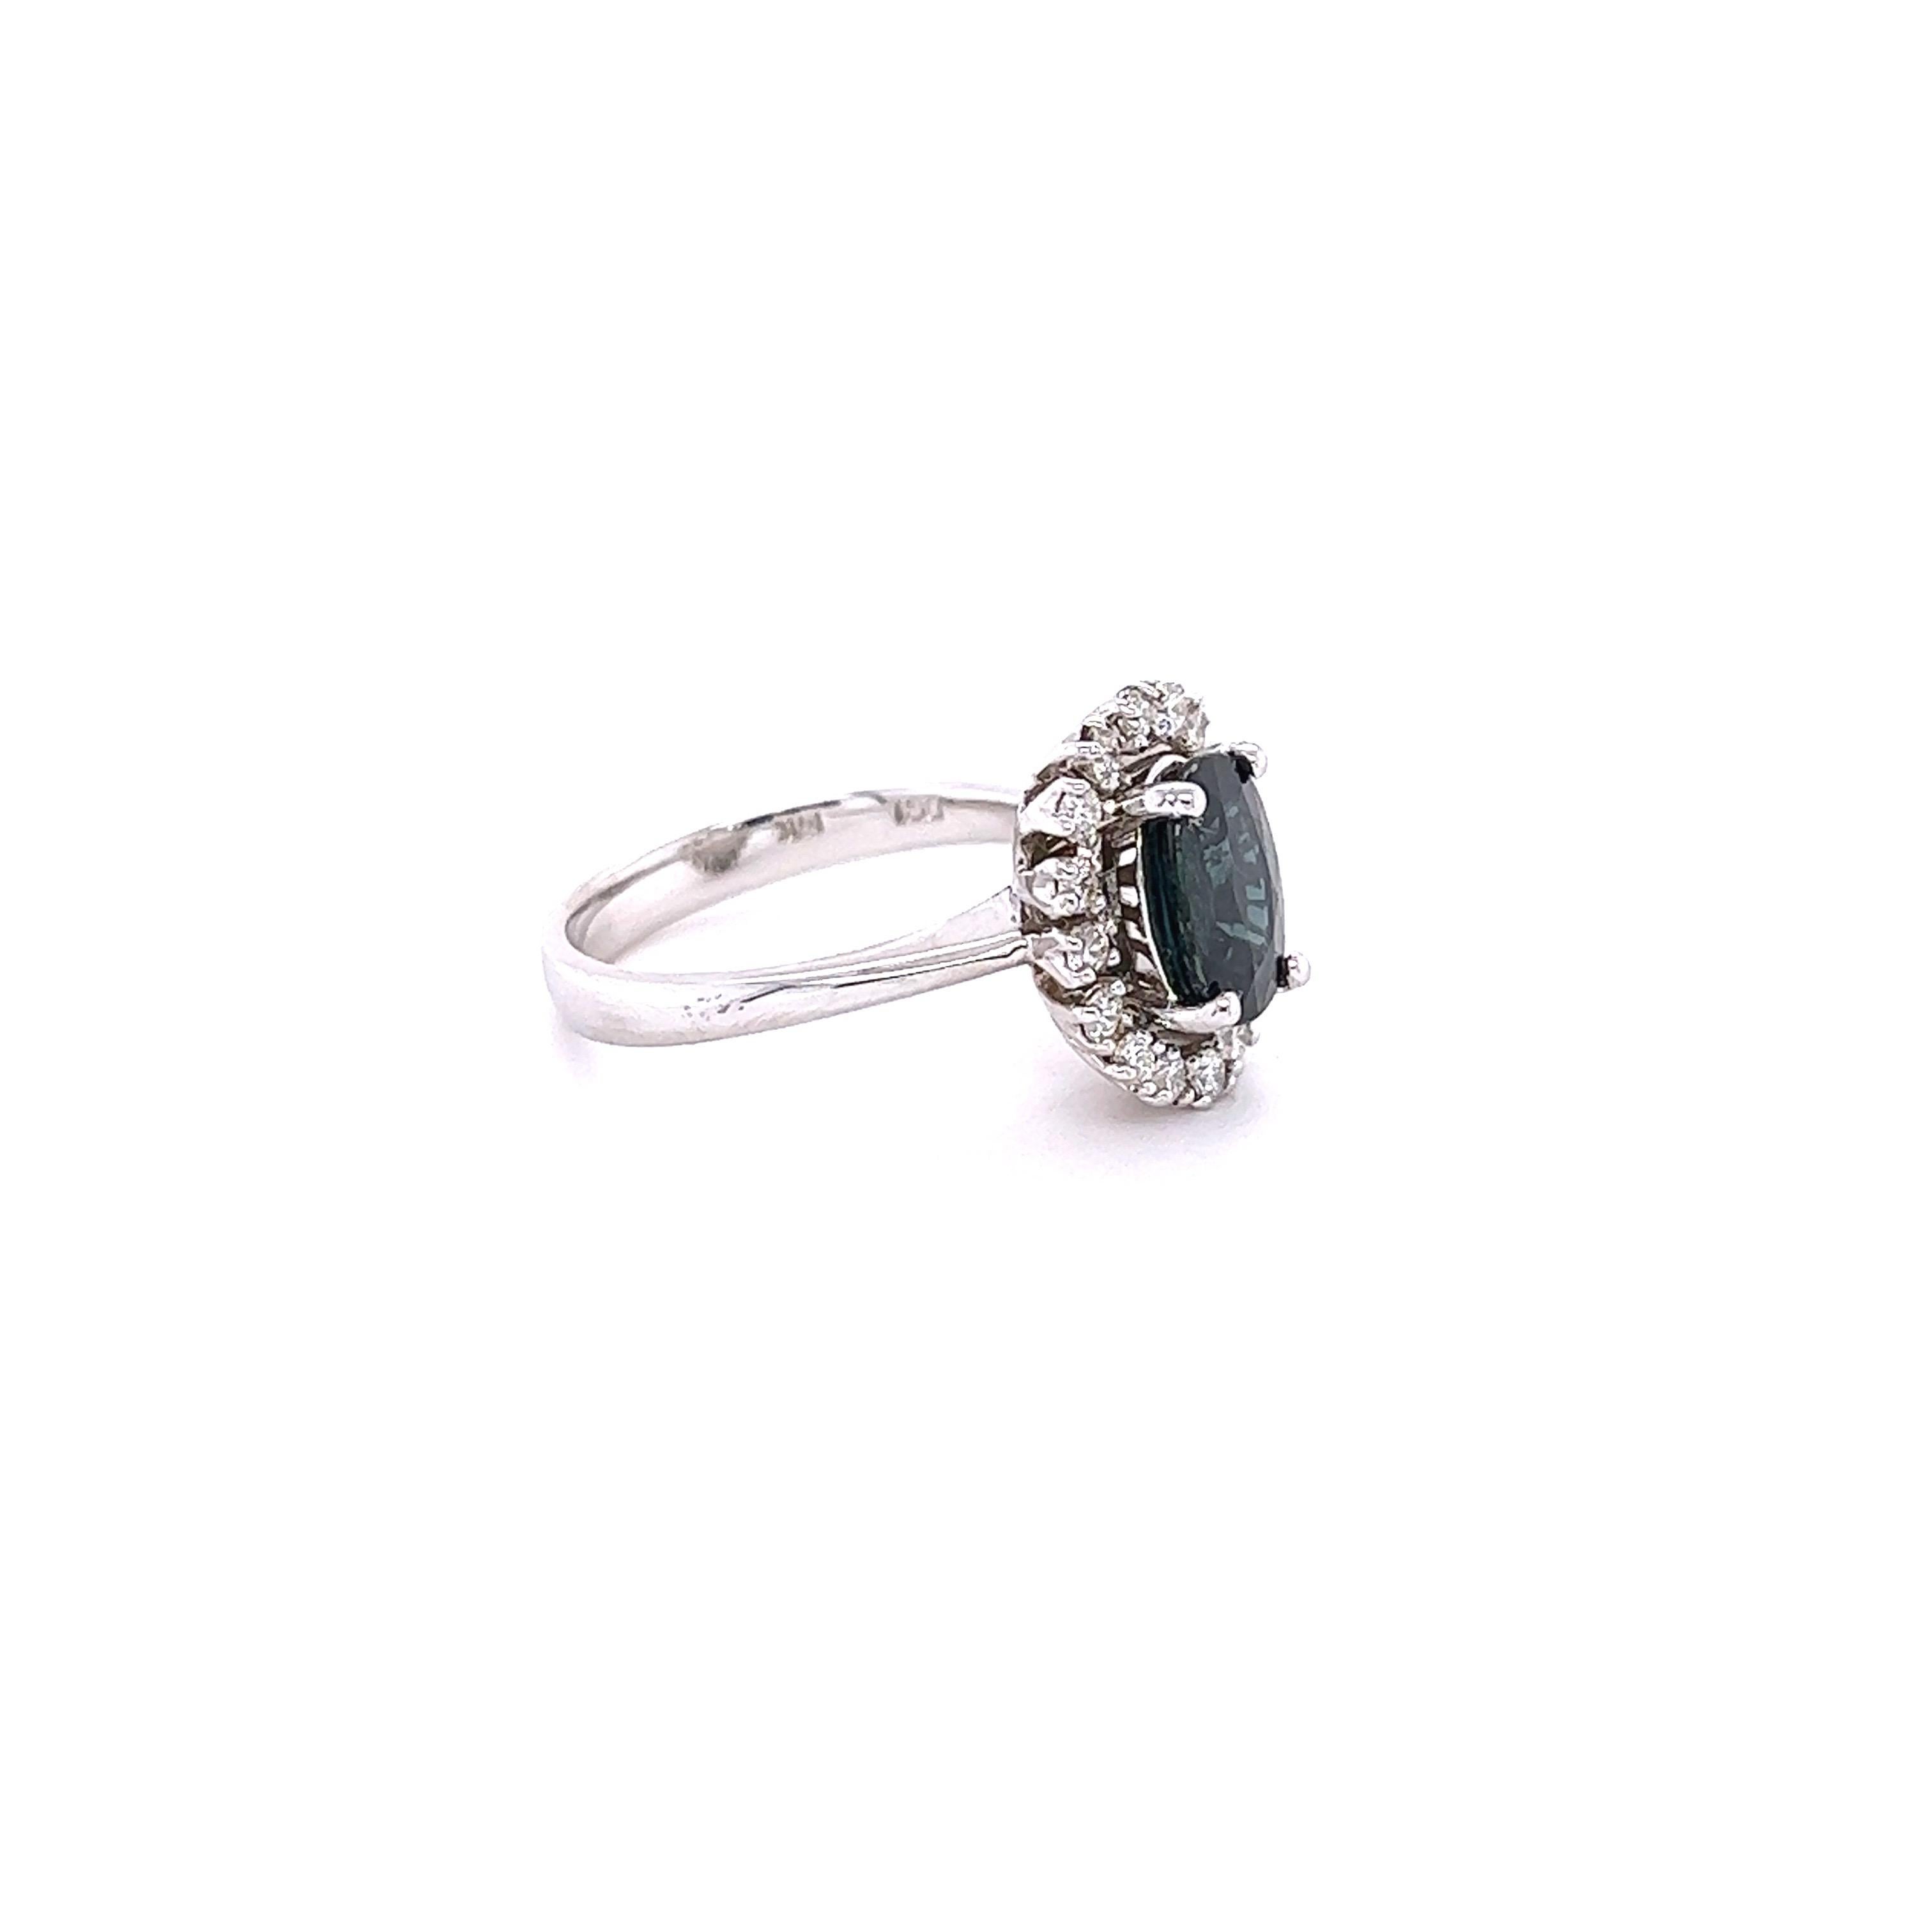 Dieser Ring aus dunkelblauem, natürlichem Saphir hat einen natürlichen, oval geschliffenen Saphir von 2,20 Karat und misst 9 mm x 7 mm. Er ist umgeben von 16 Diamanten im Rundschliff mit einem Gewicht von 0,40 Karat.  (Reinheit: VS2, Farbe: H) Das